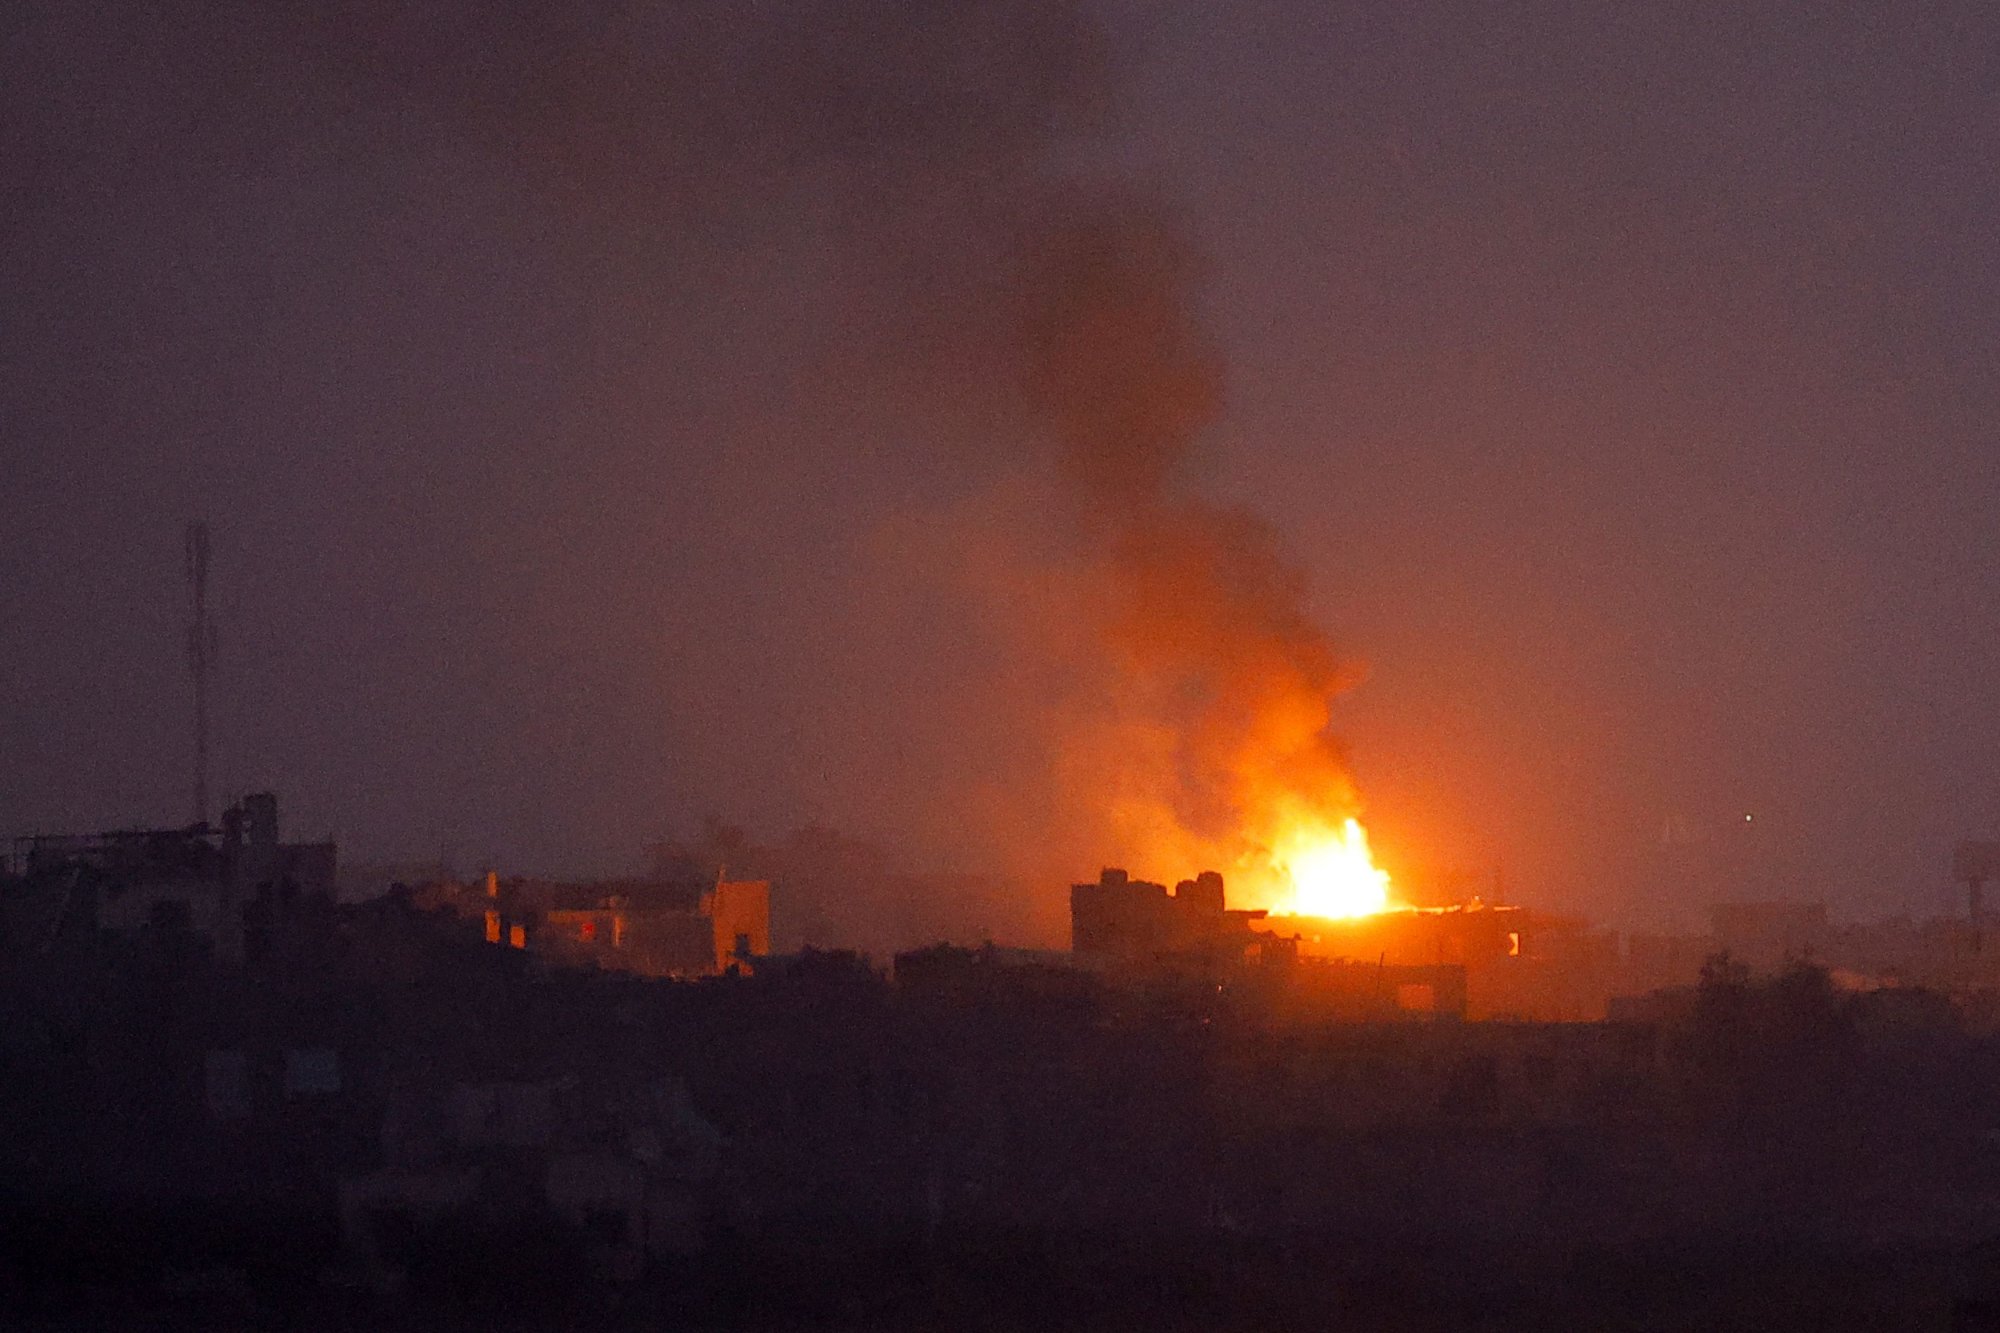 Live: Λίγο πριν την κατάπαυση του πυρός συνεχίζεται το σφυροκόπημα στη Γάζα - Βροχή επιθέσεων κατά των ΗΠΑ